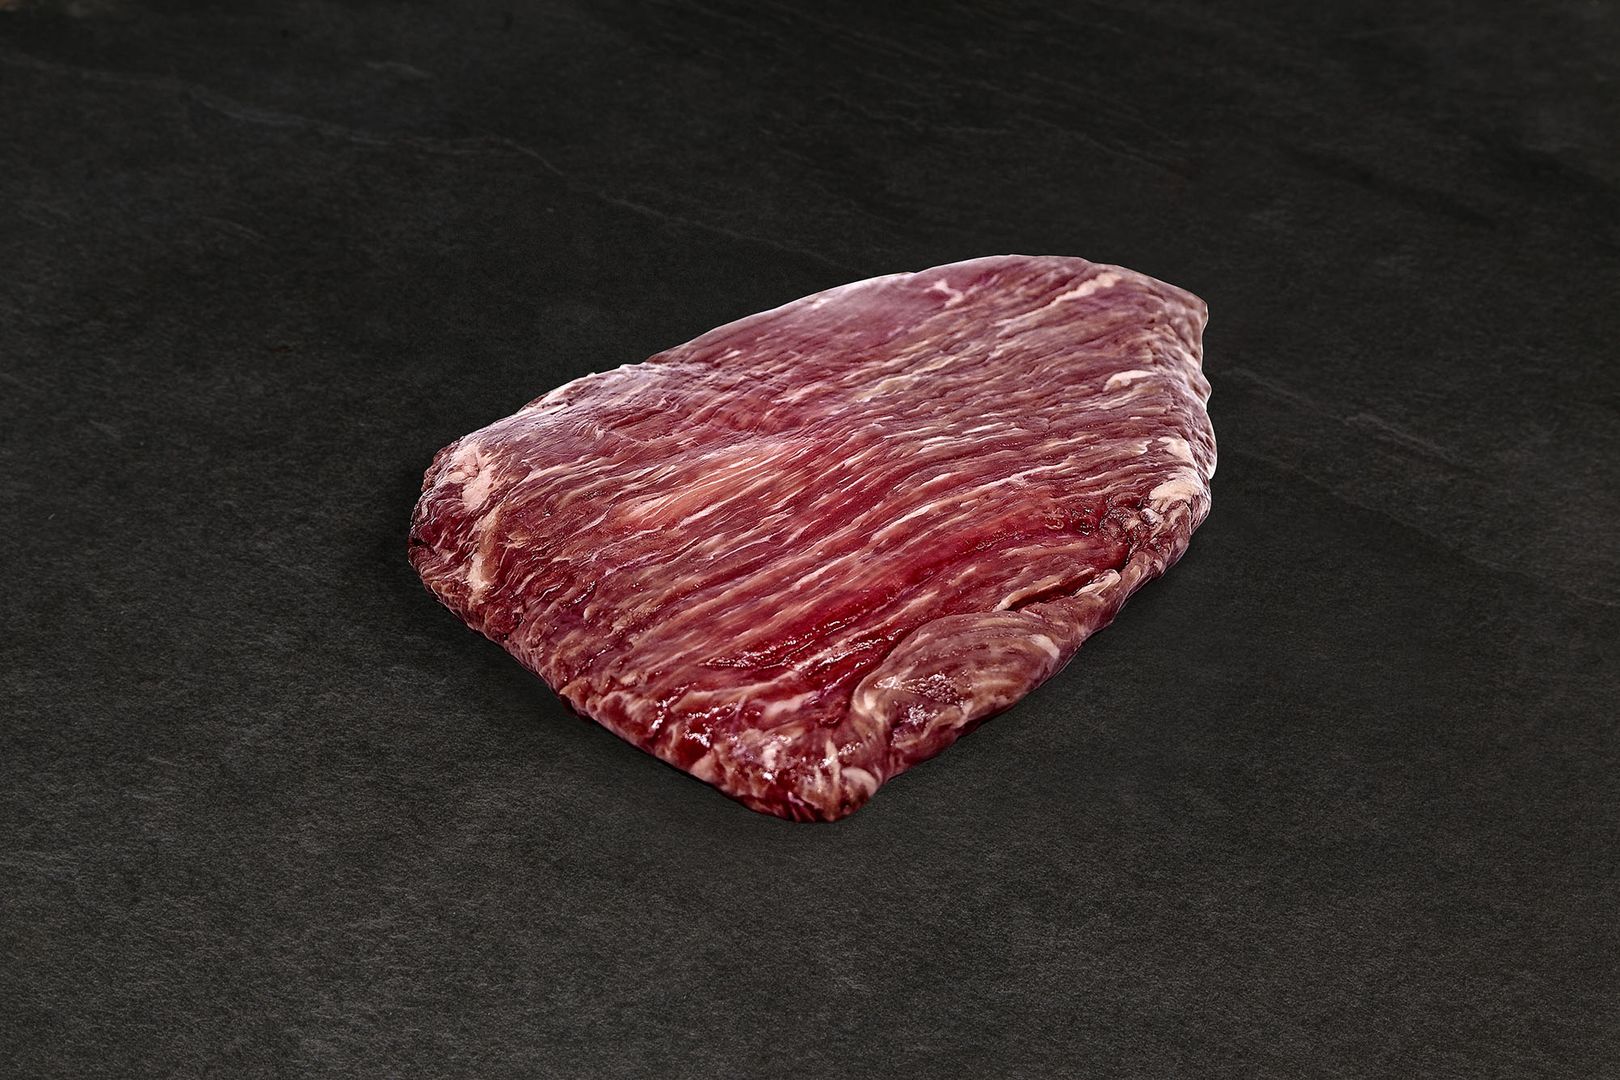 Flank Steak - CooksInfo